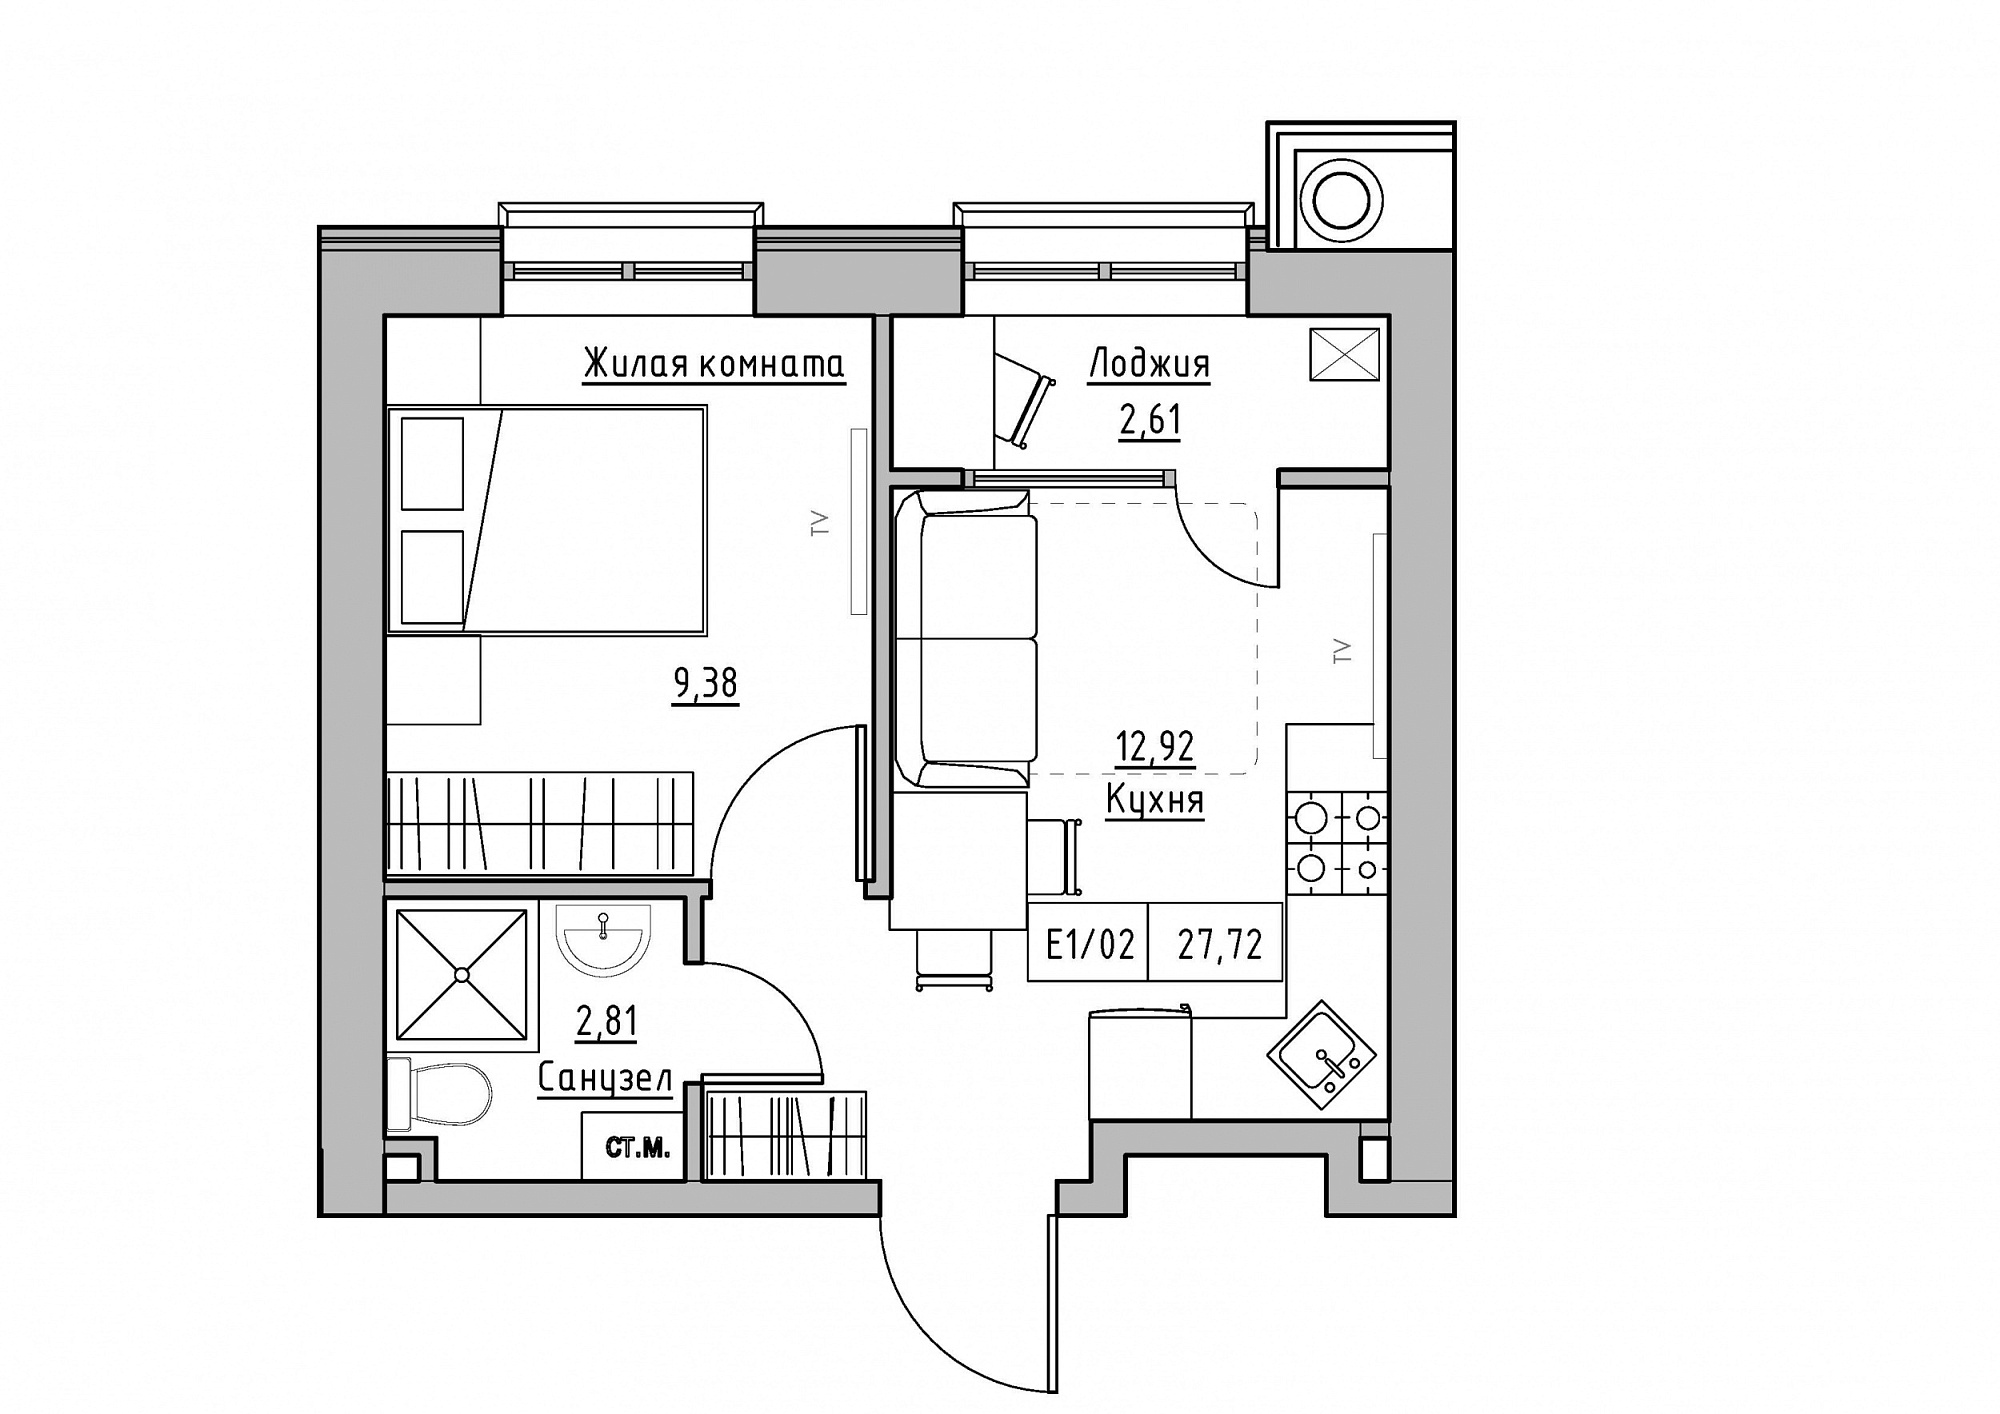 Планування 1-к квартира площею 27.72м2, KS-012-02/0001.